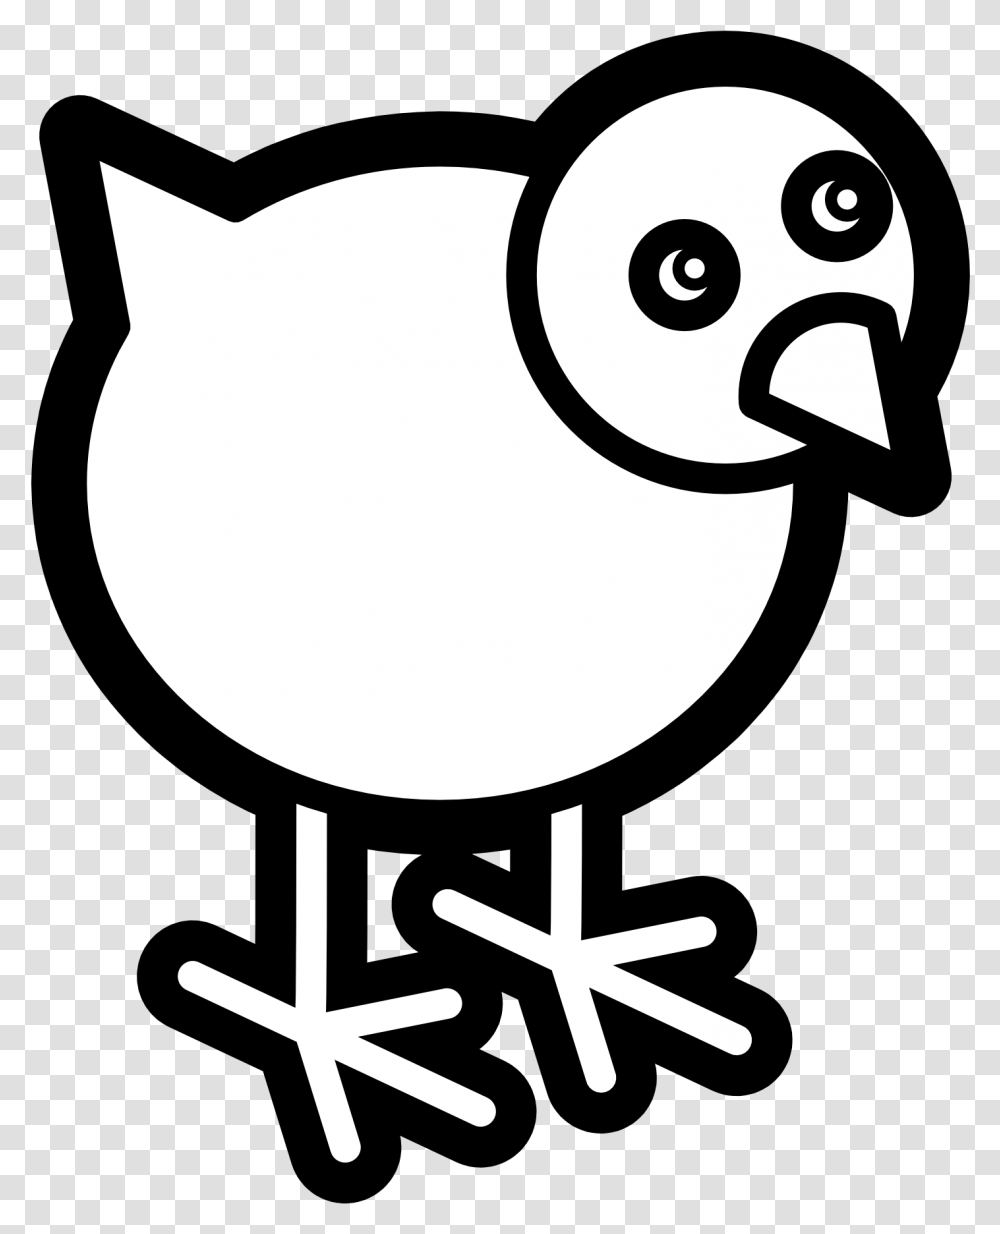 Chicken Icon Black White Line Art Dibujo De Un Pollito Fcil, Bird, Animal, Stencil Transparent Png